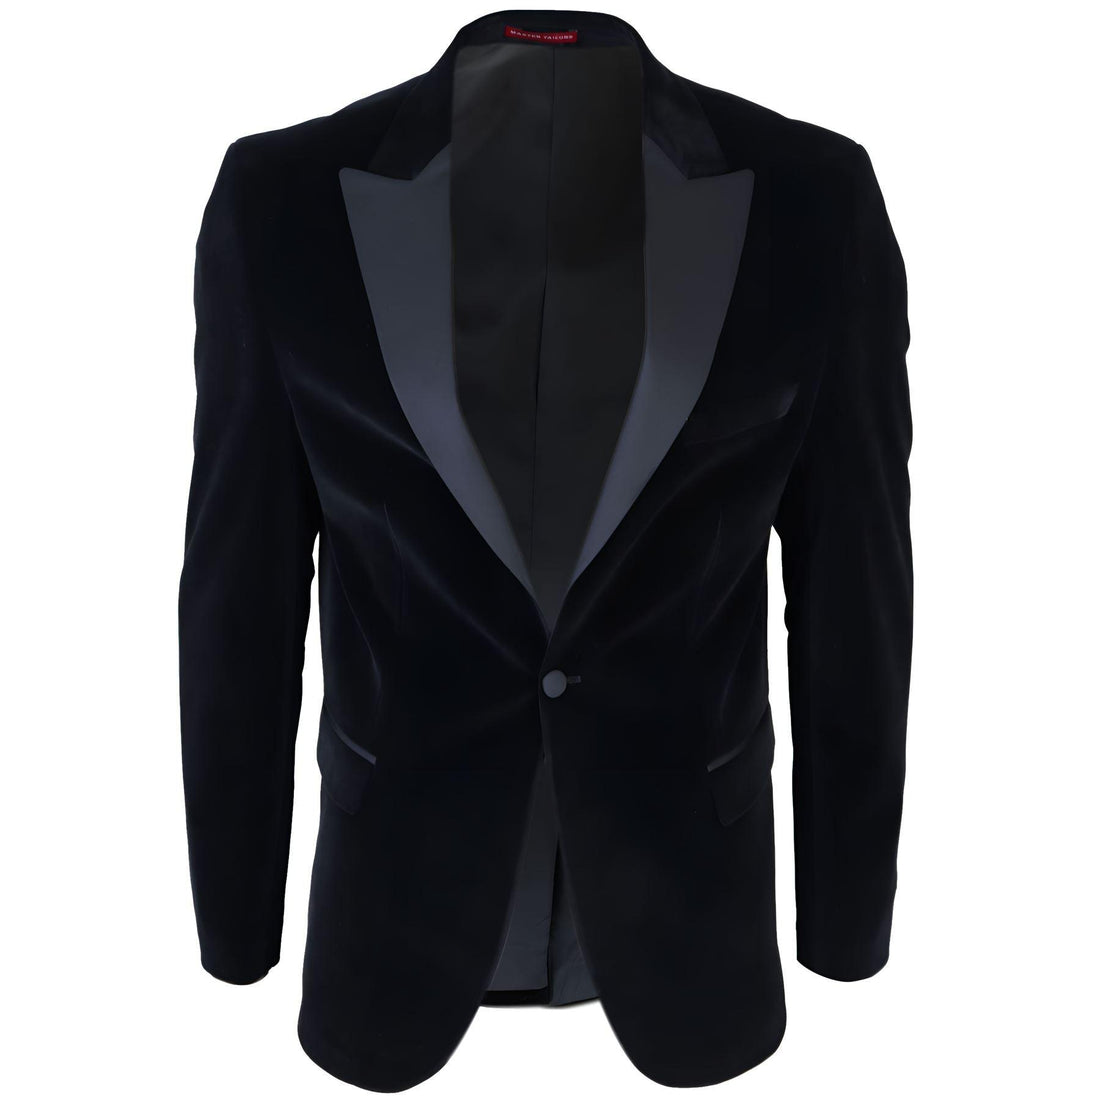 Mens Black Velvet Tuxedo Blazer Satin Peak Lapels Dinner Jacket Wedding Prom Black Tie - Knighthood Store